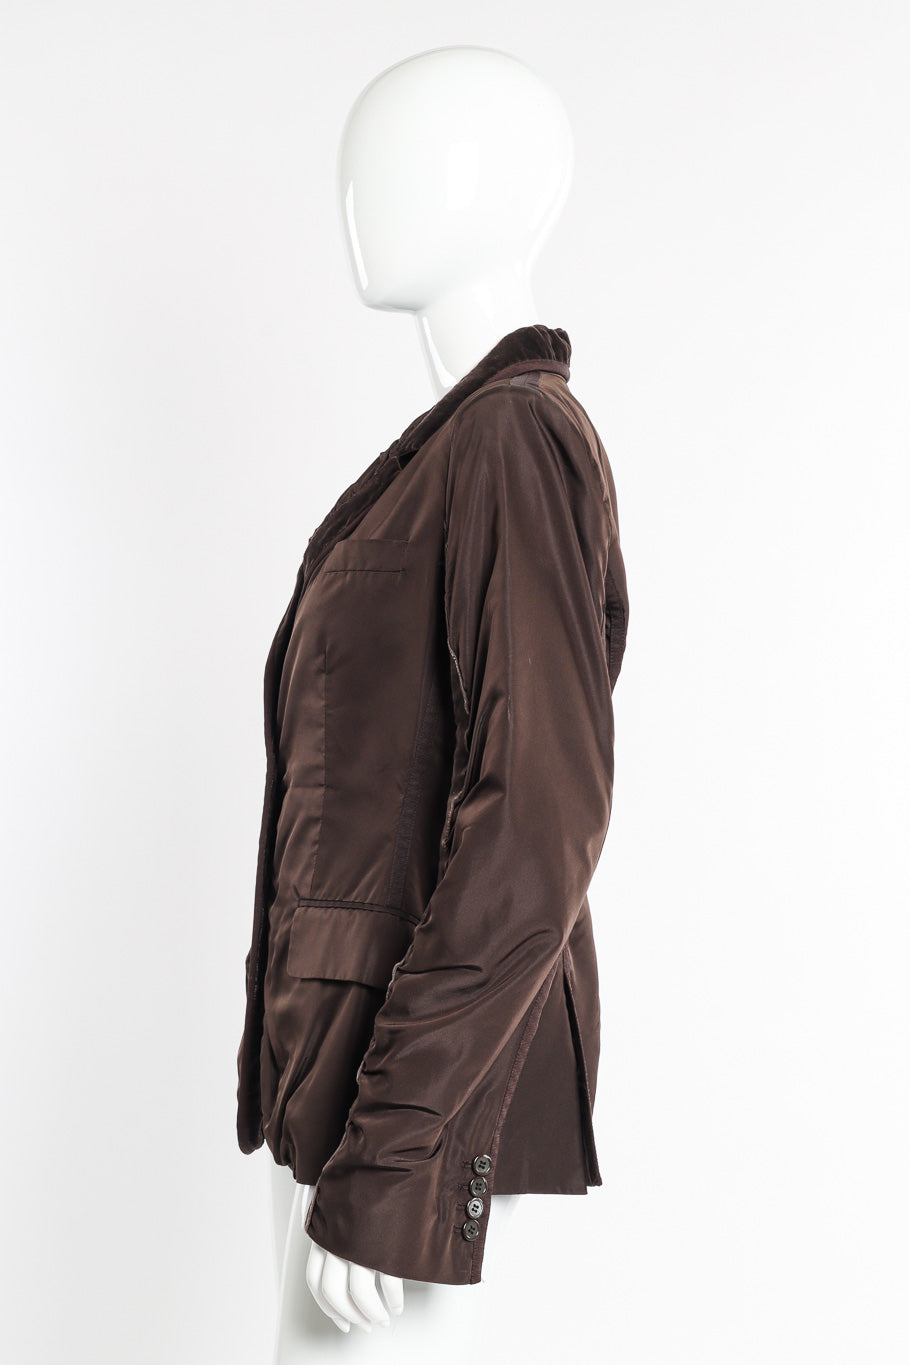 Silk velvet jacket by Yves Saint Laurent on mannequin side @recessla